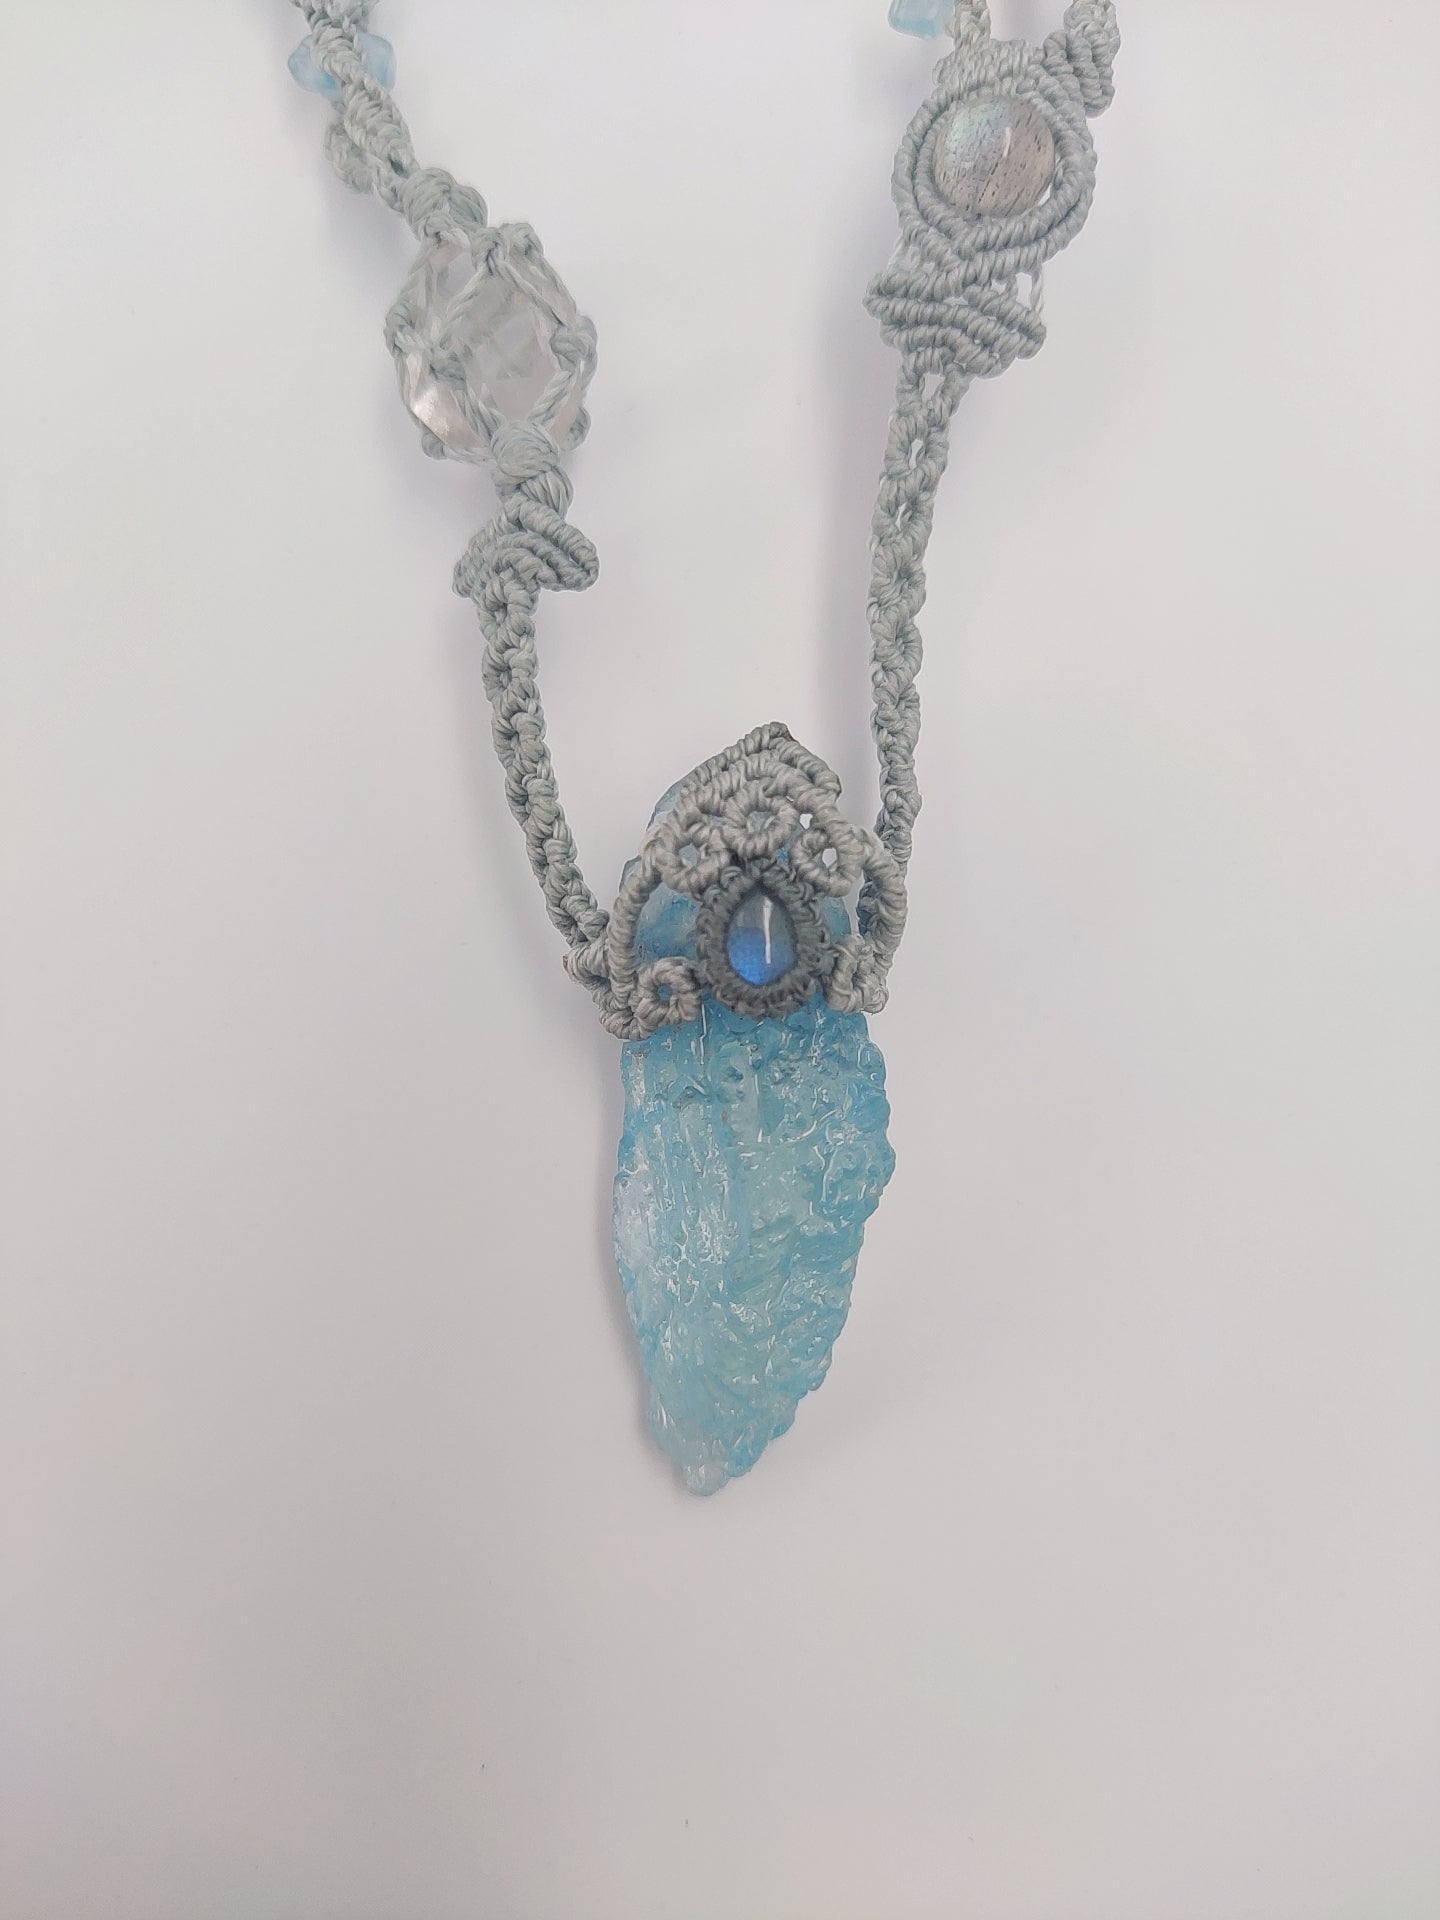 Gem Stone Necklace Handmade